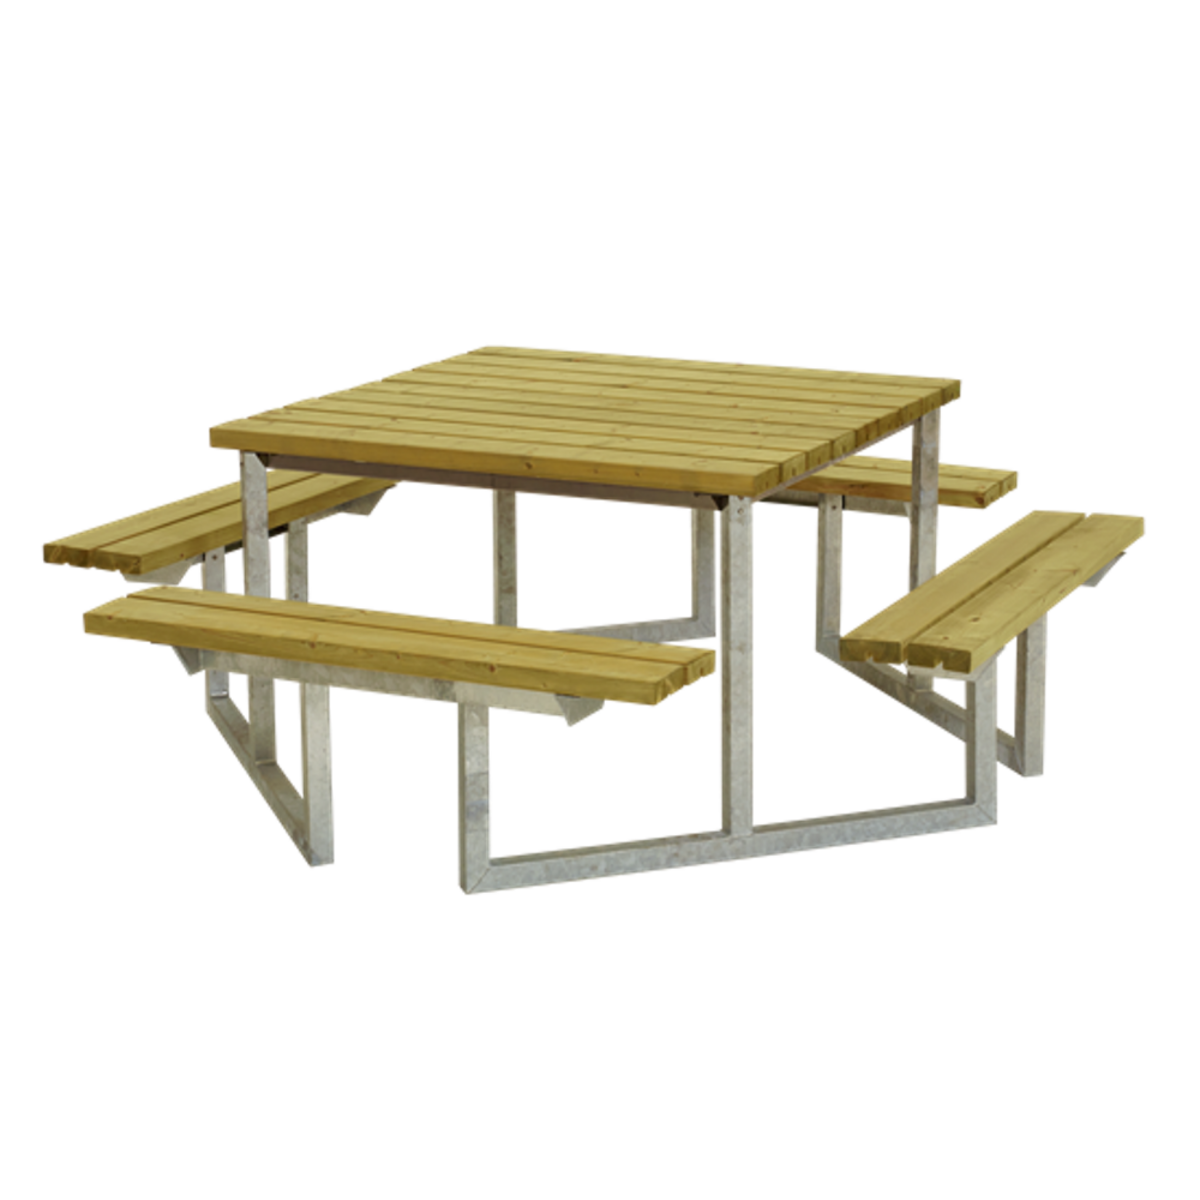 Picknicktisch, Gartentisch, Gartenmöbel  TWIST - 8 Sitzplätze - KDI Holz - Natur